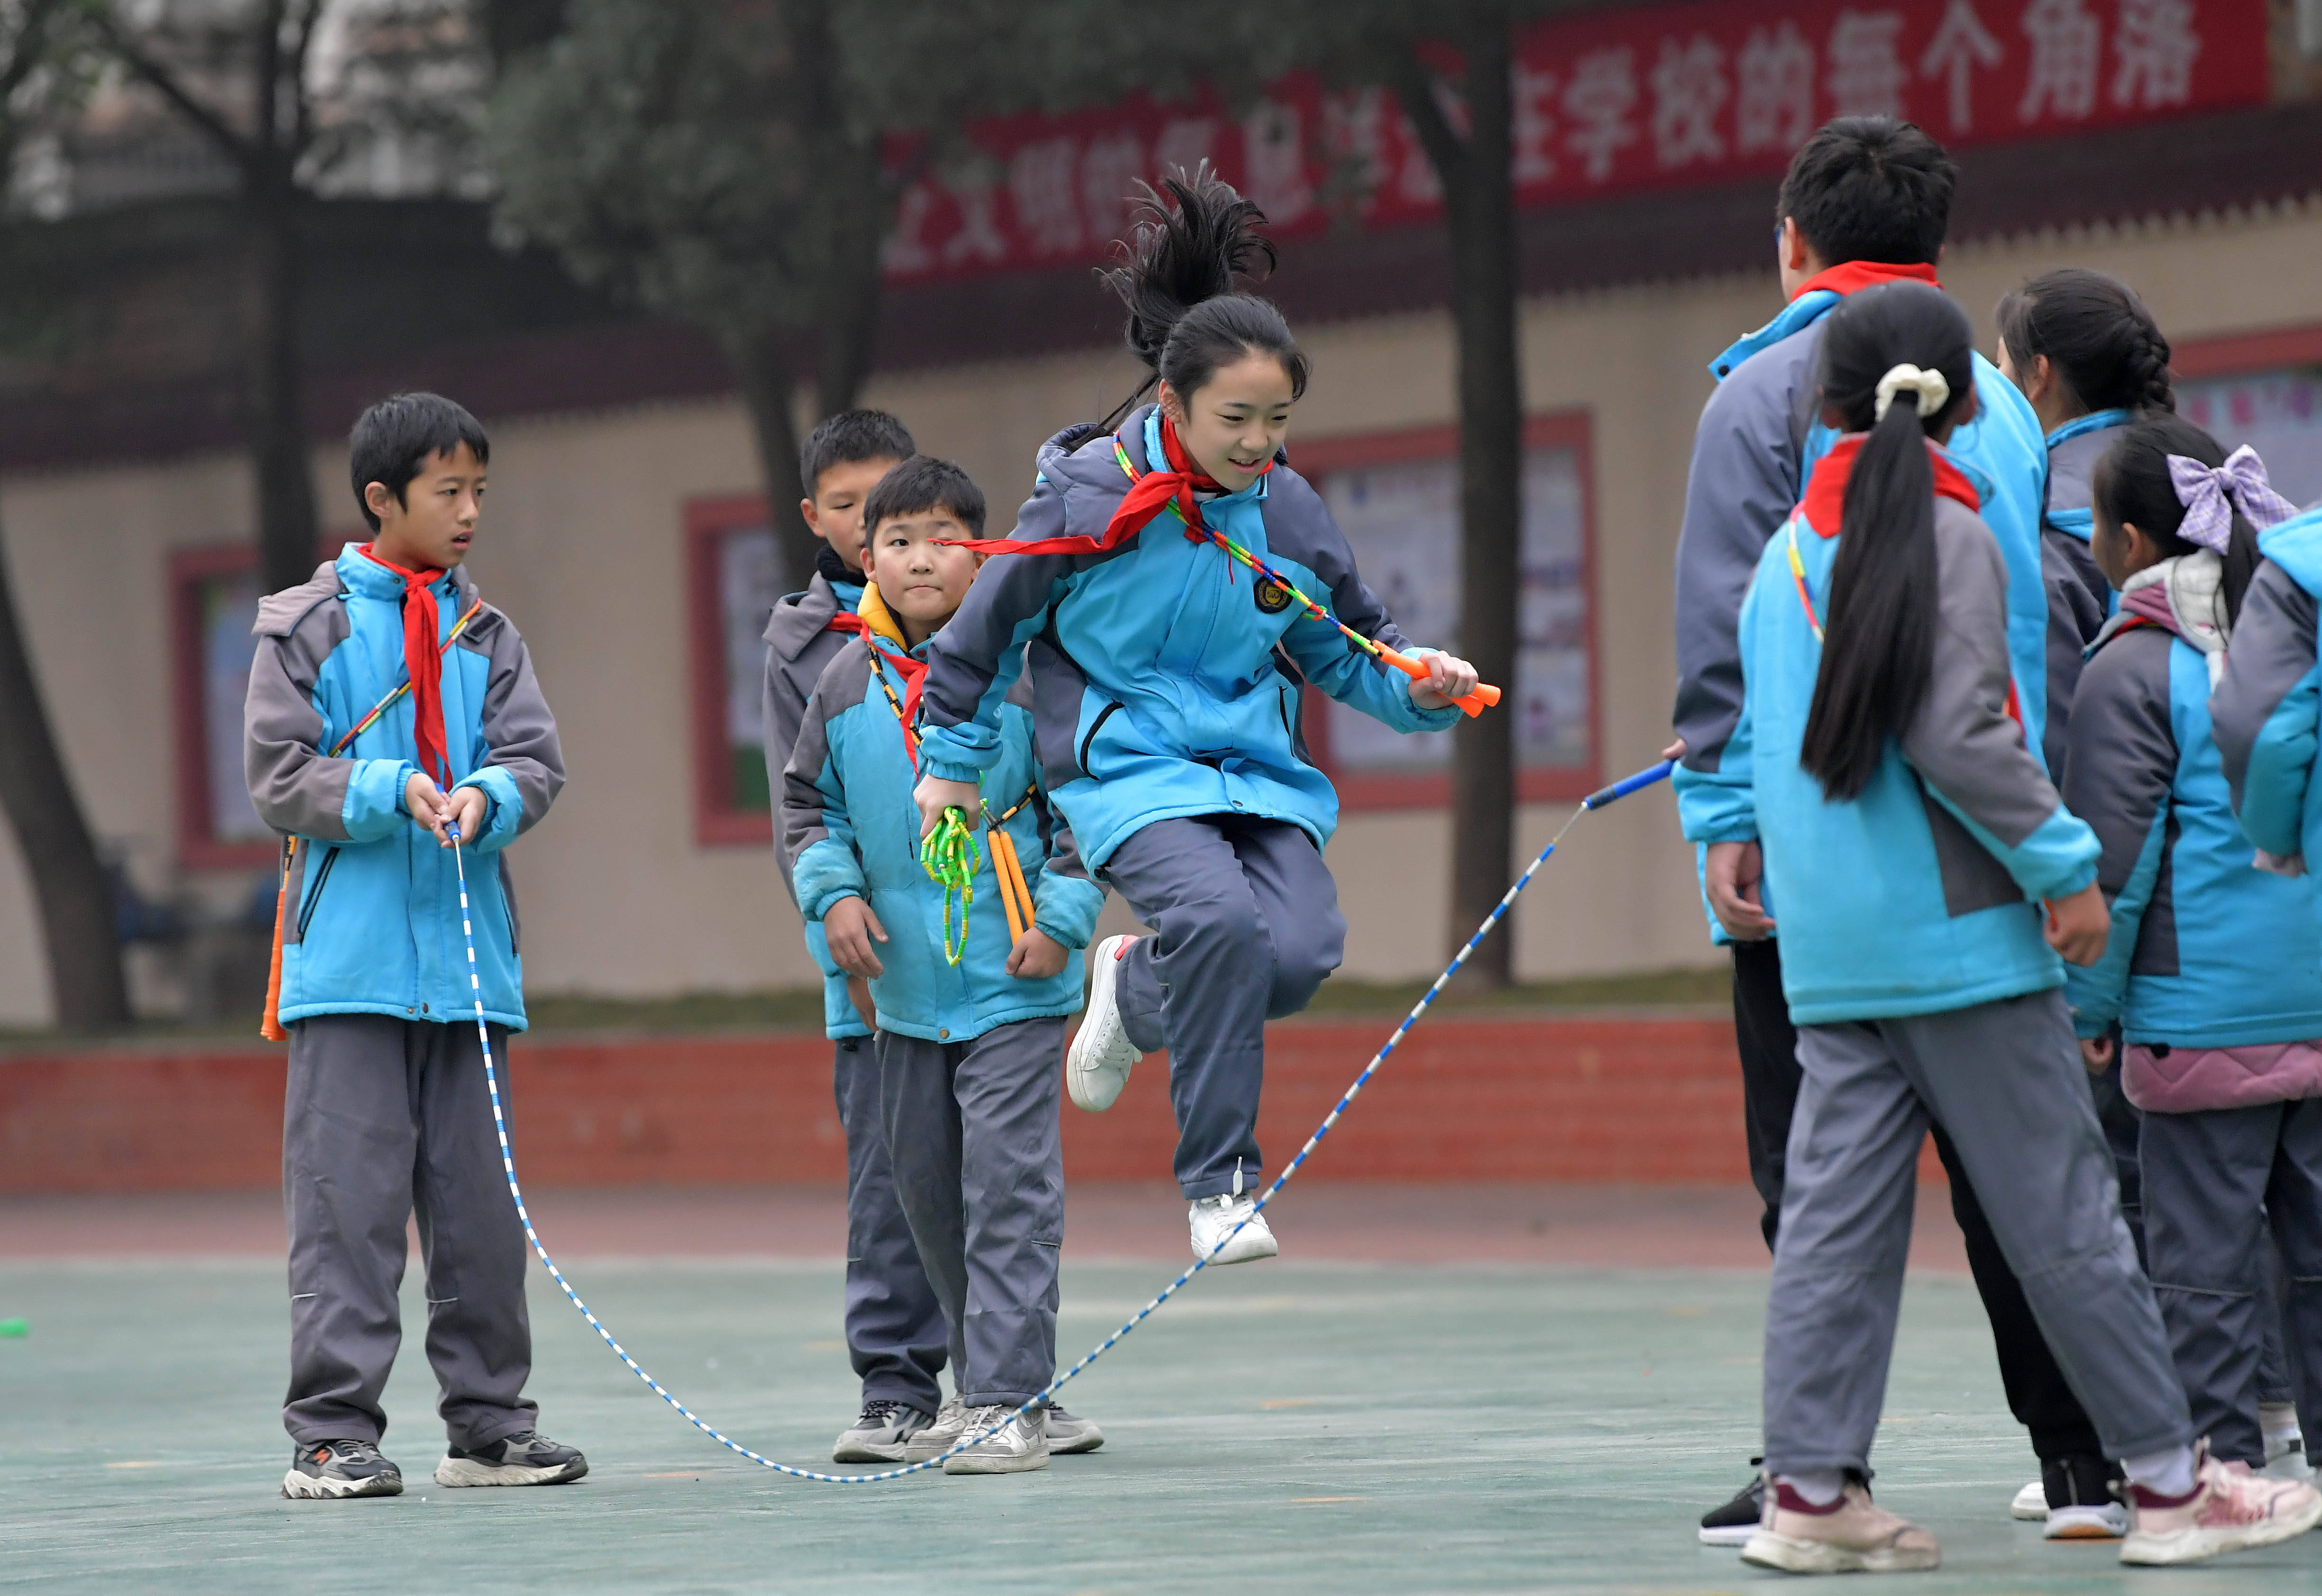 奥林匹克的追光者——盲童跳绳队 - 中国日报网